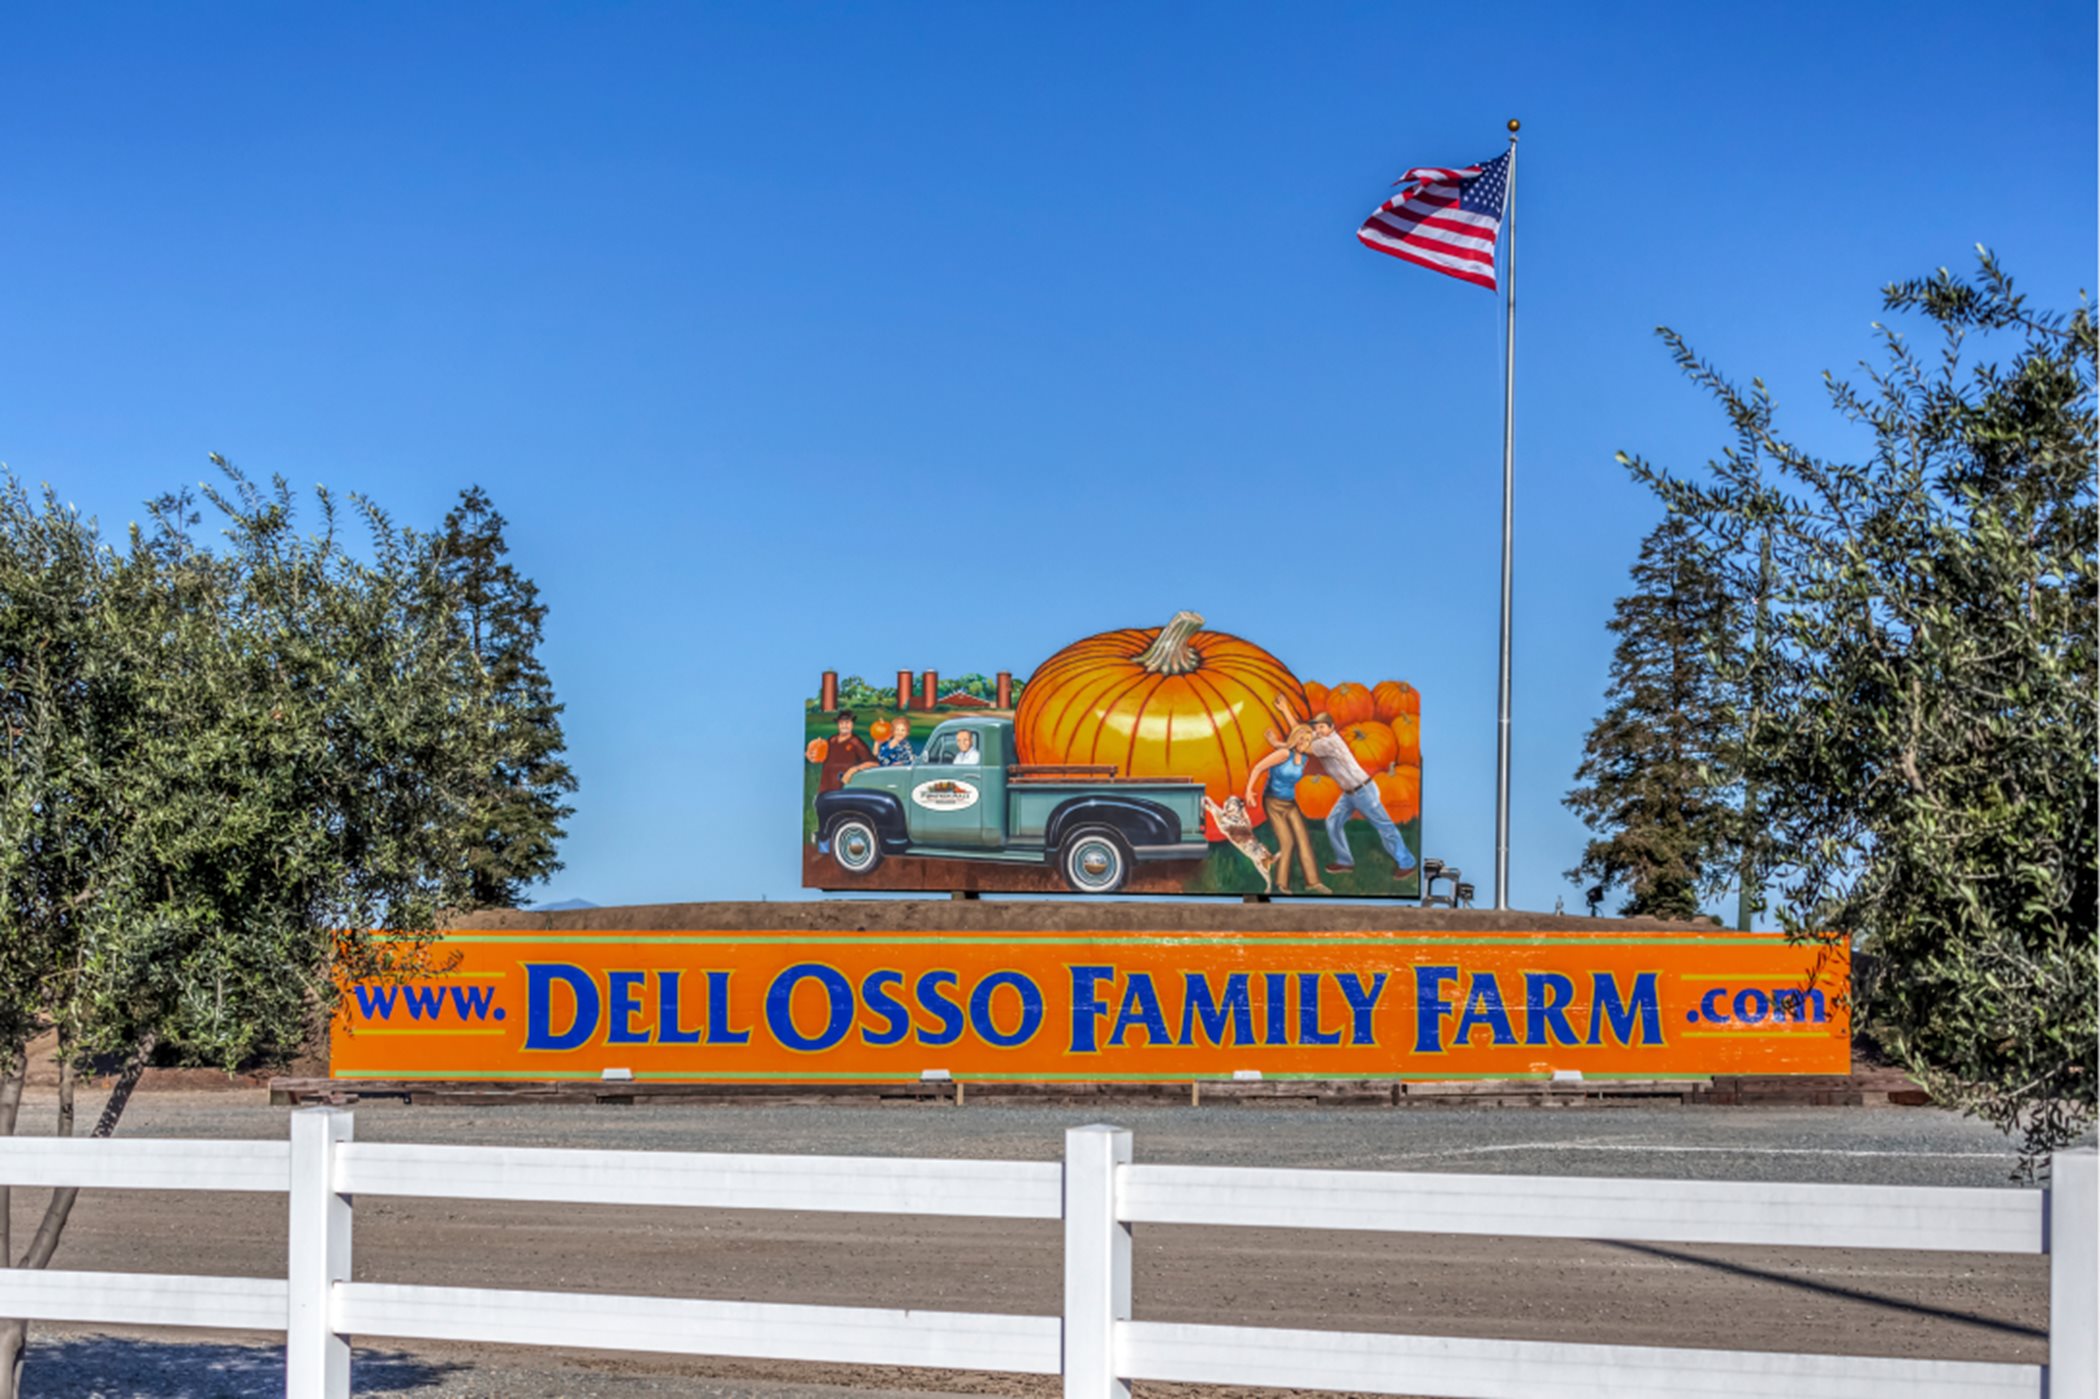 Dell Osso Family Farm